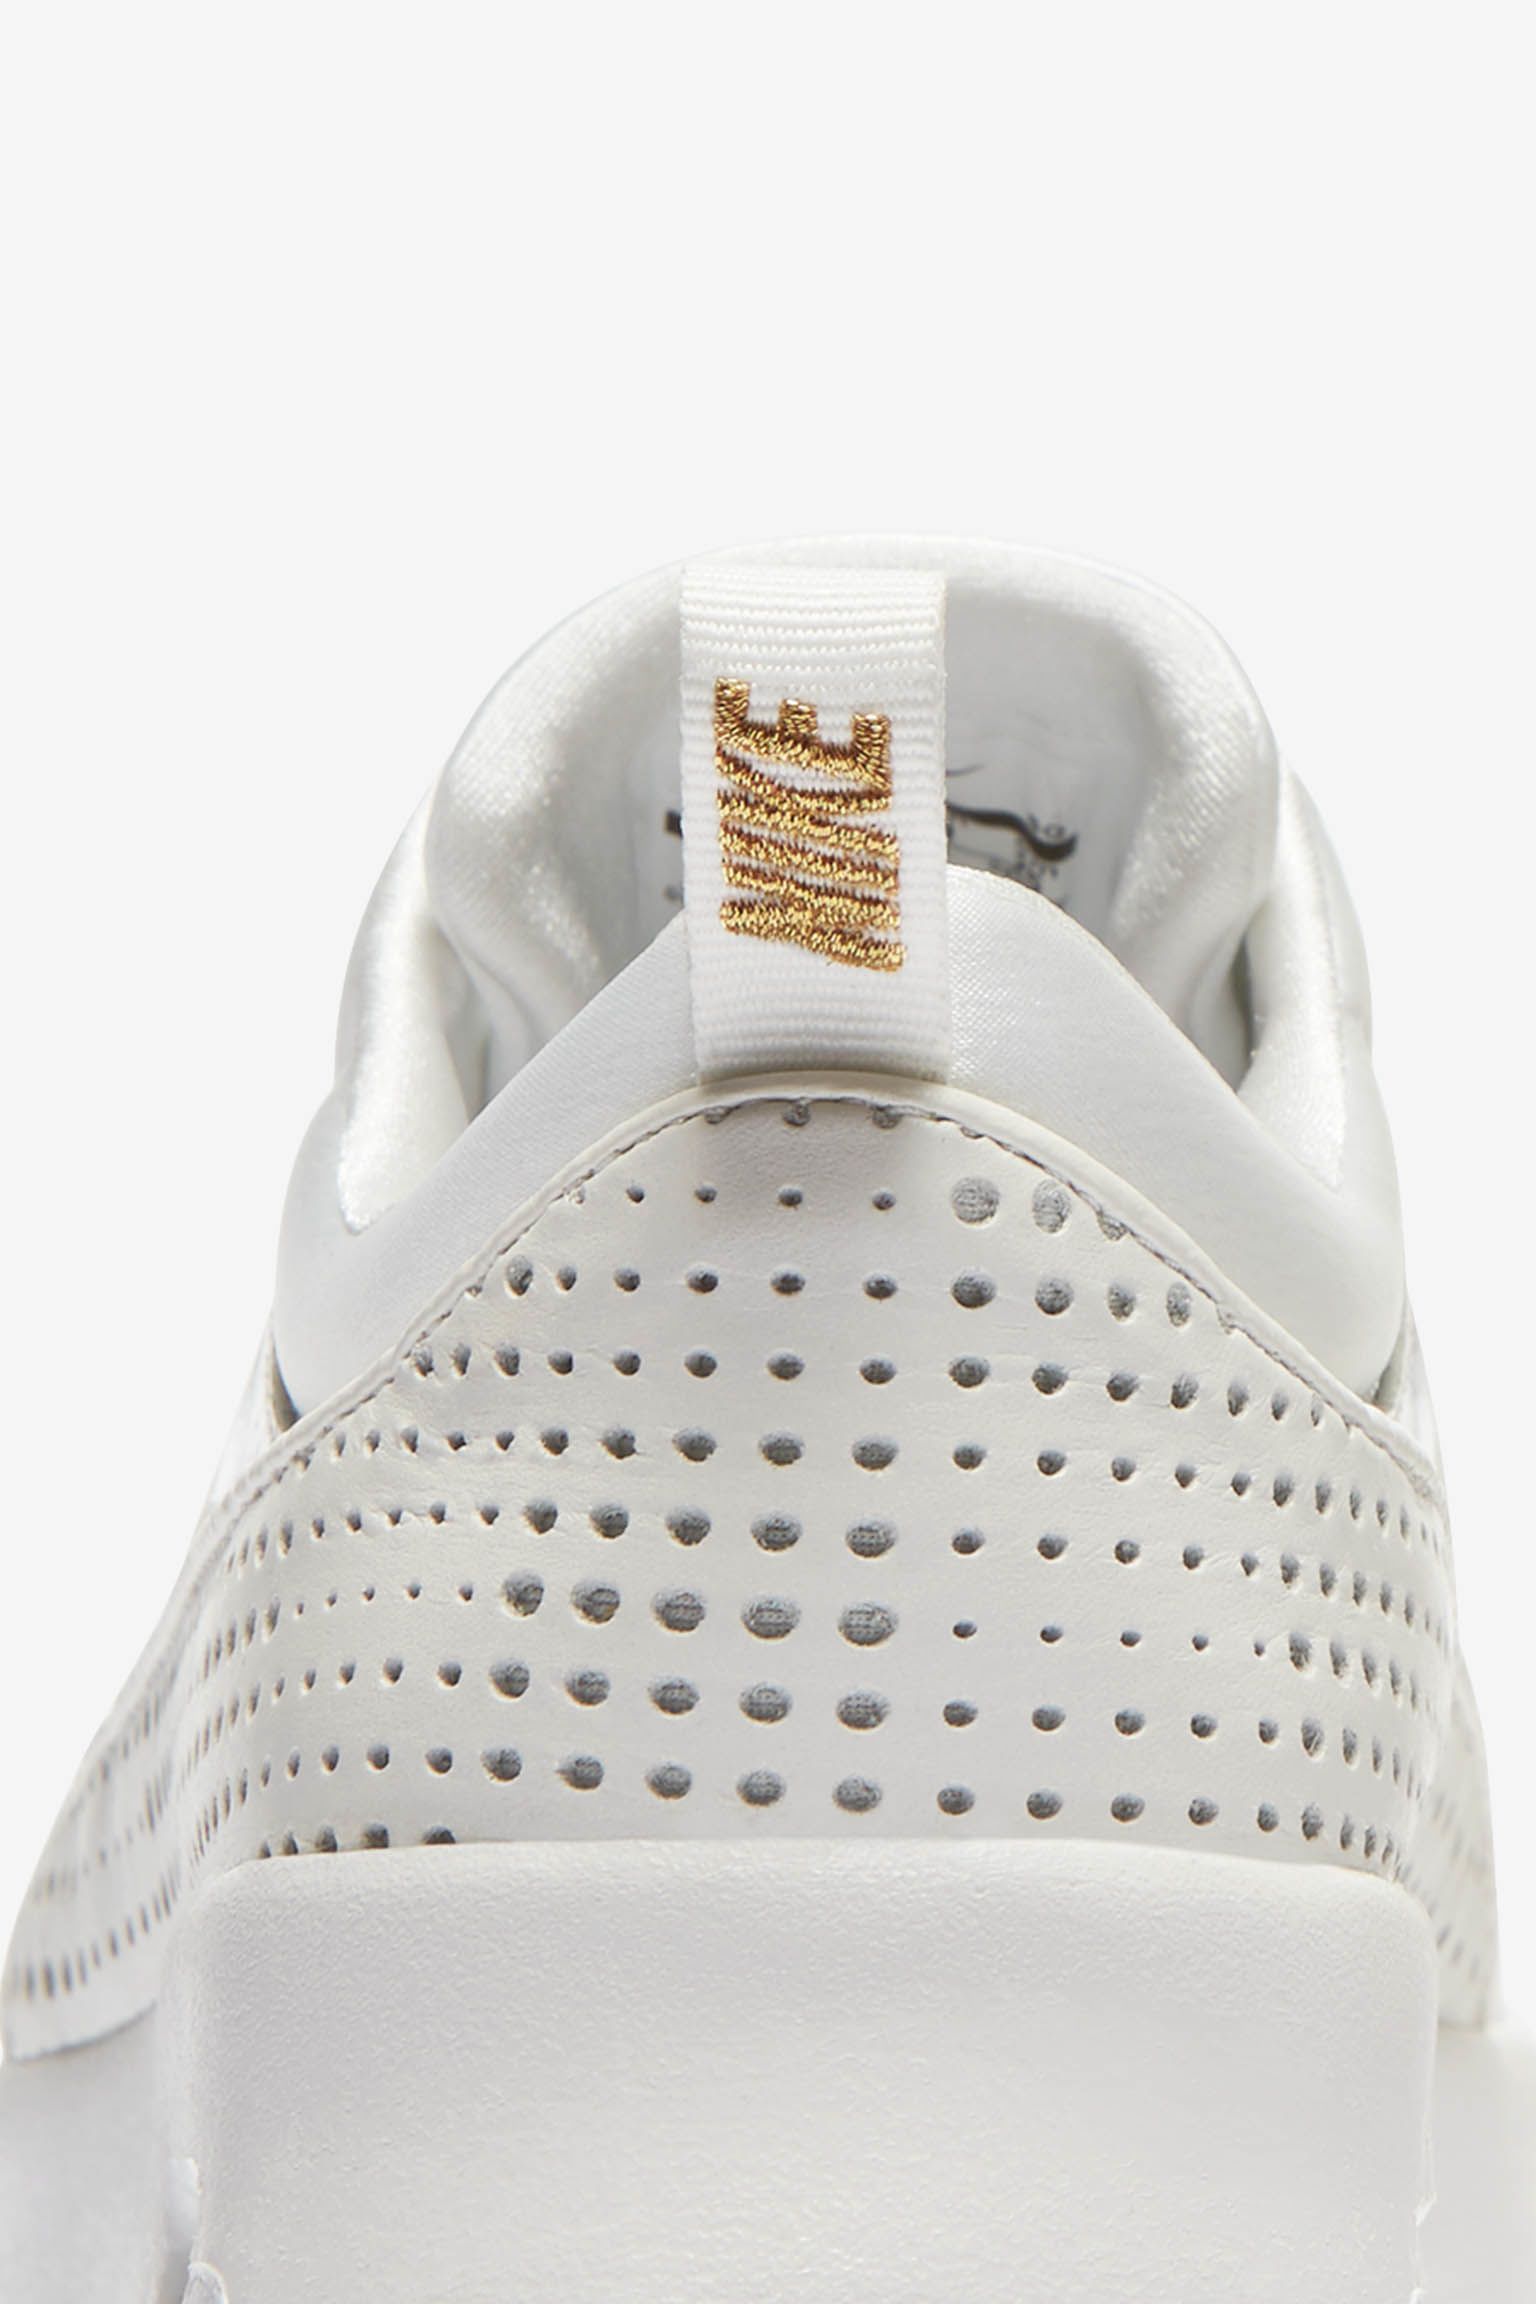 Nike Air Max Thea Premium 'Summit White 